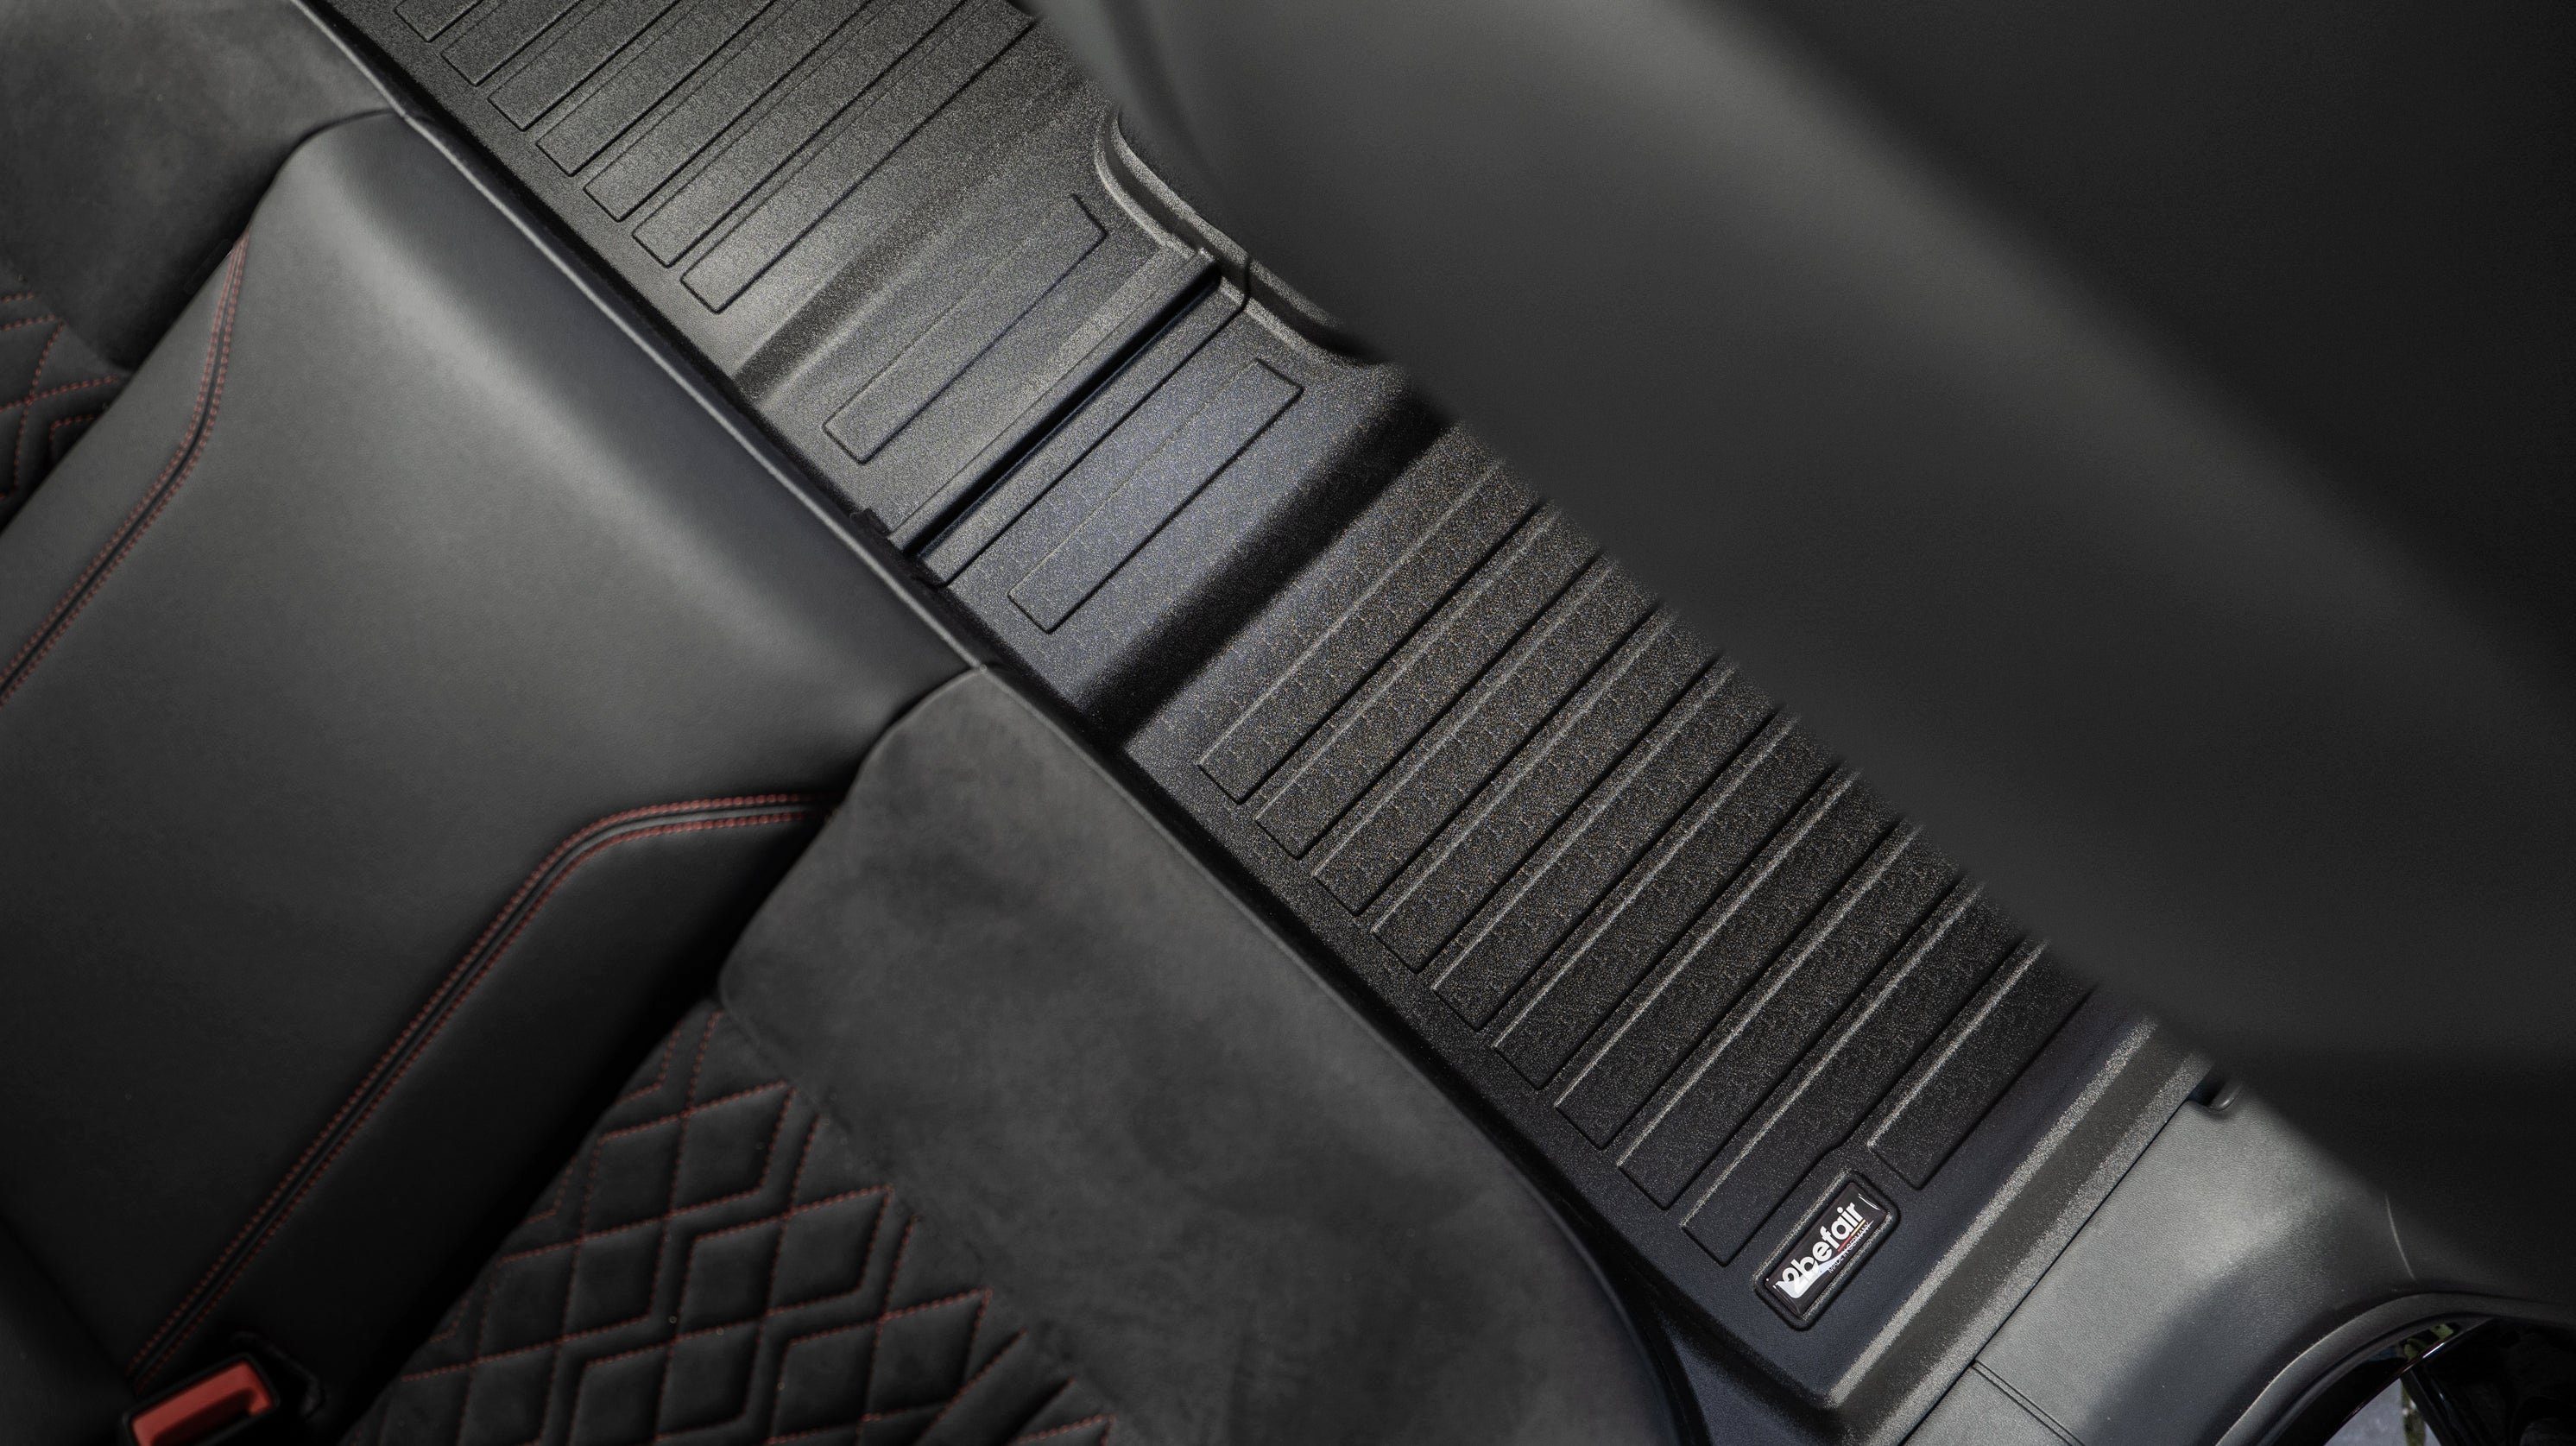 2befair Auto-Fußmatte für e-tron Gesamtset den Audi Q4 Gummimatten